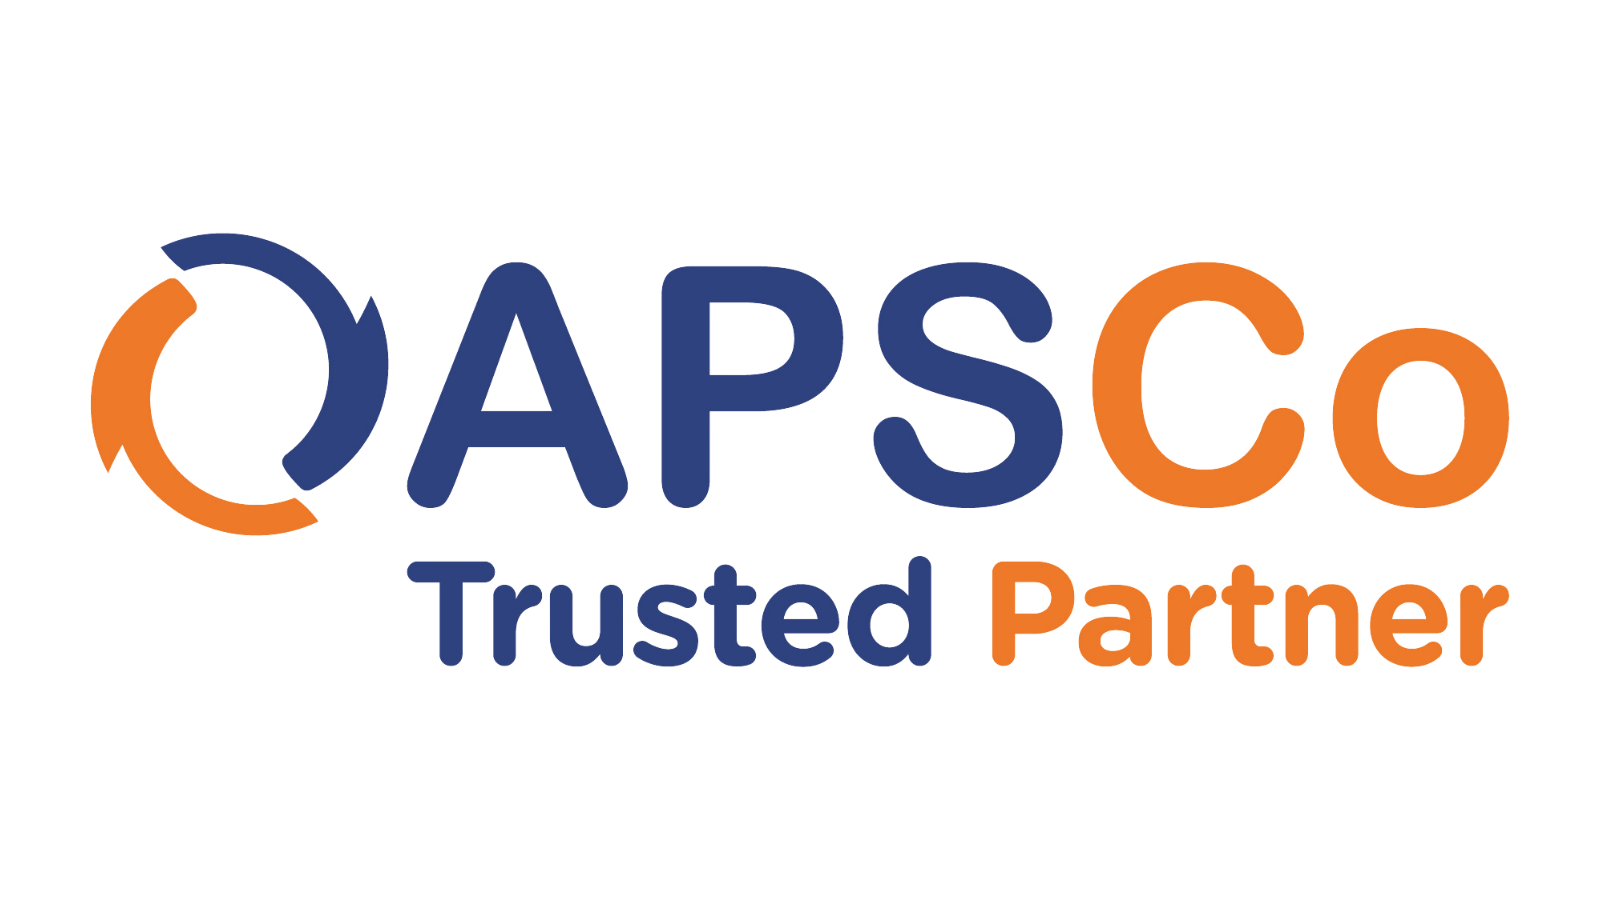 APSCo logo